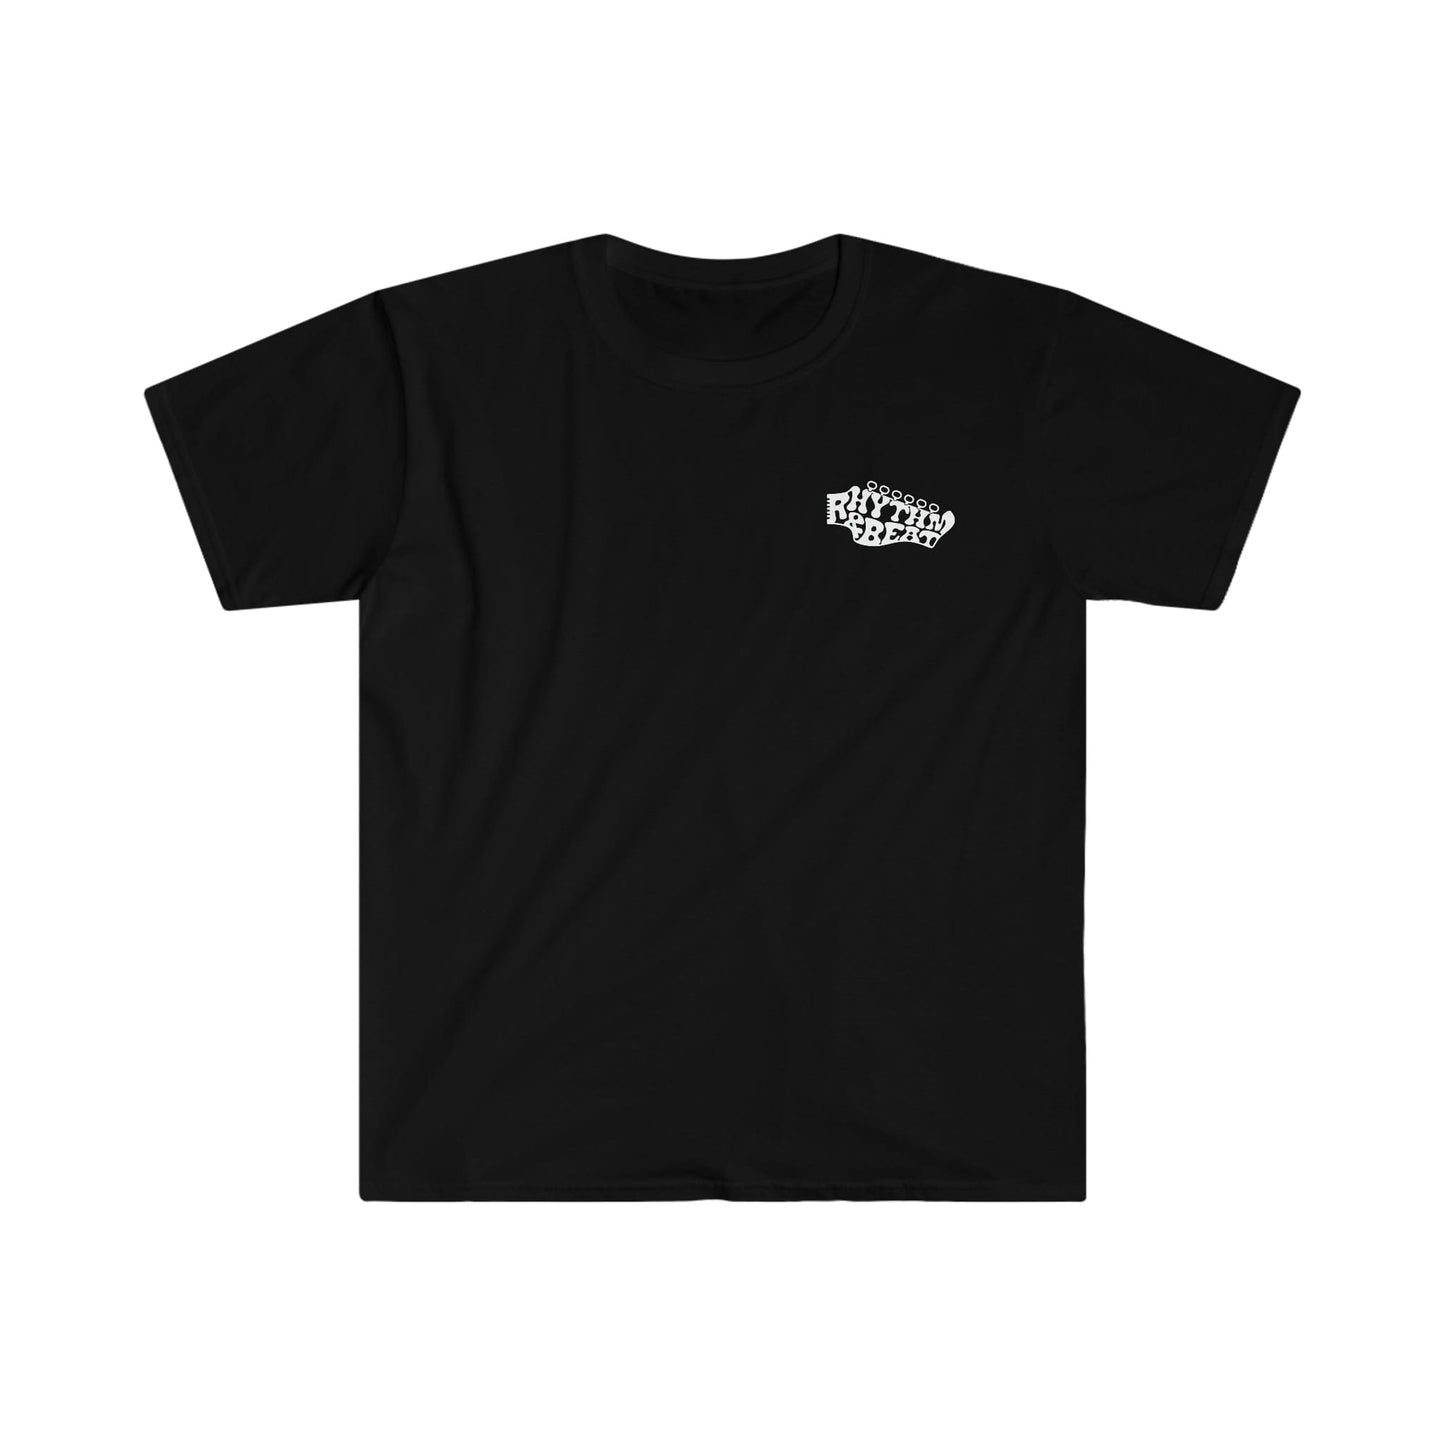 Printify T-Shirt Black / S Liberty Branded T-Shirt